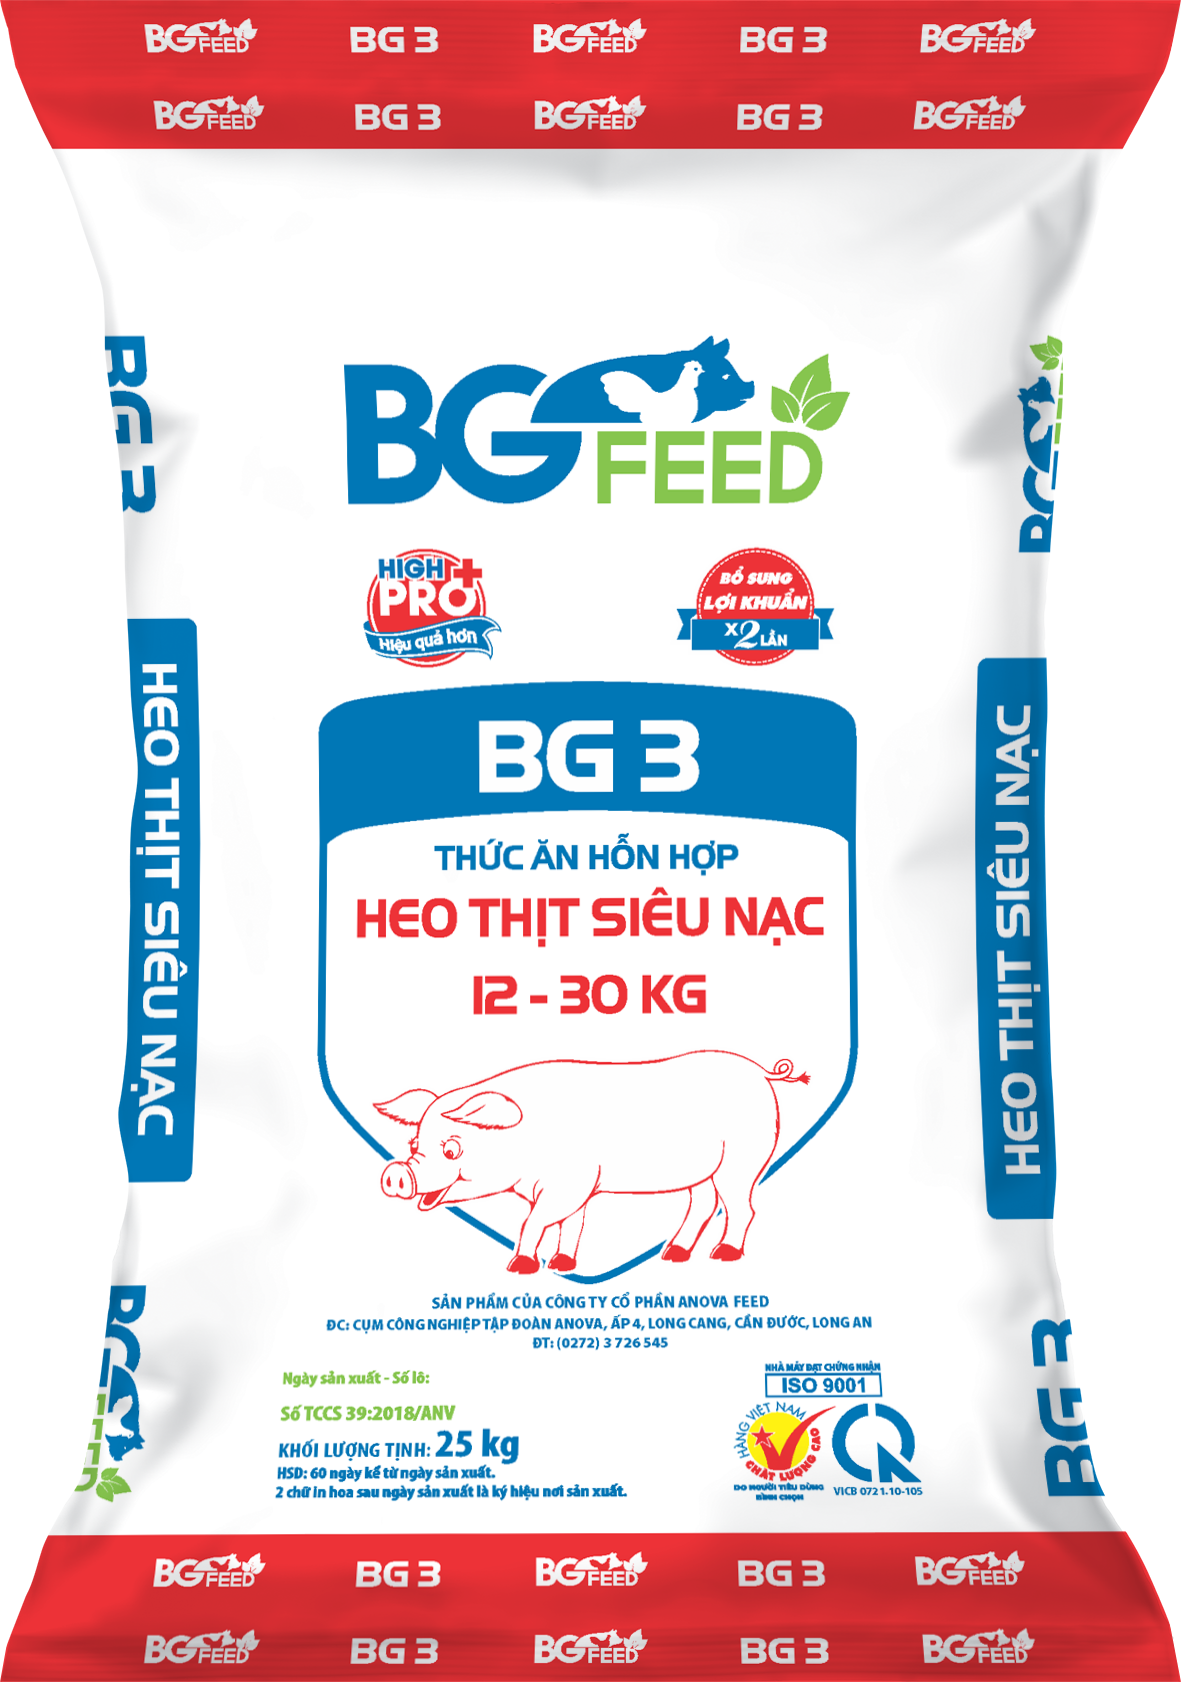 Thức ăn hỗn hợp HEO THỊT SIÊU NẠC 12 - 30kg BG3